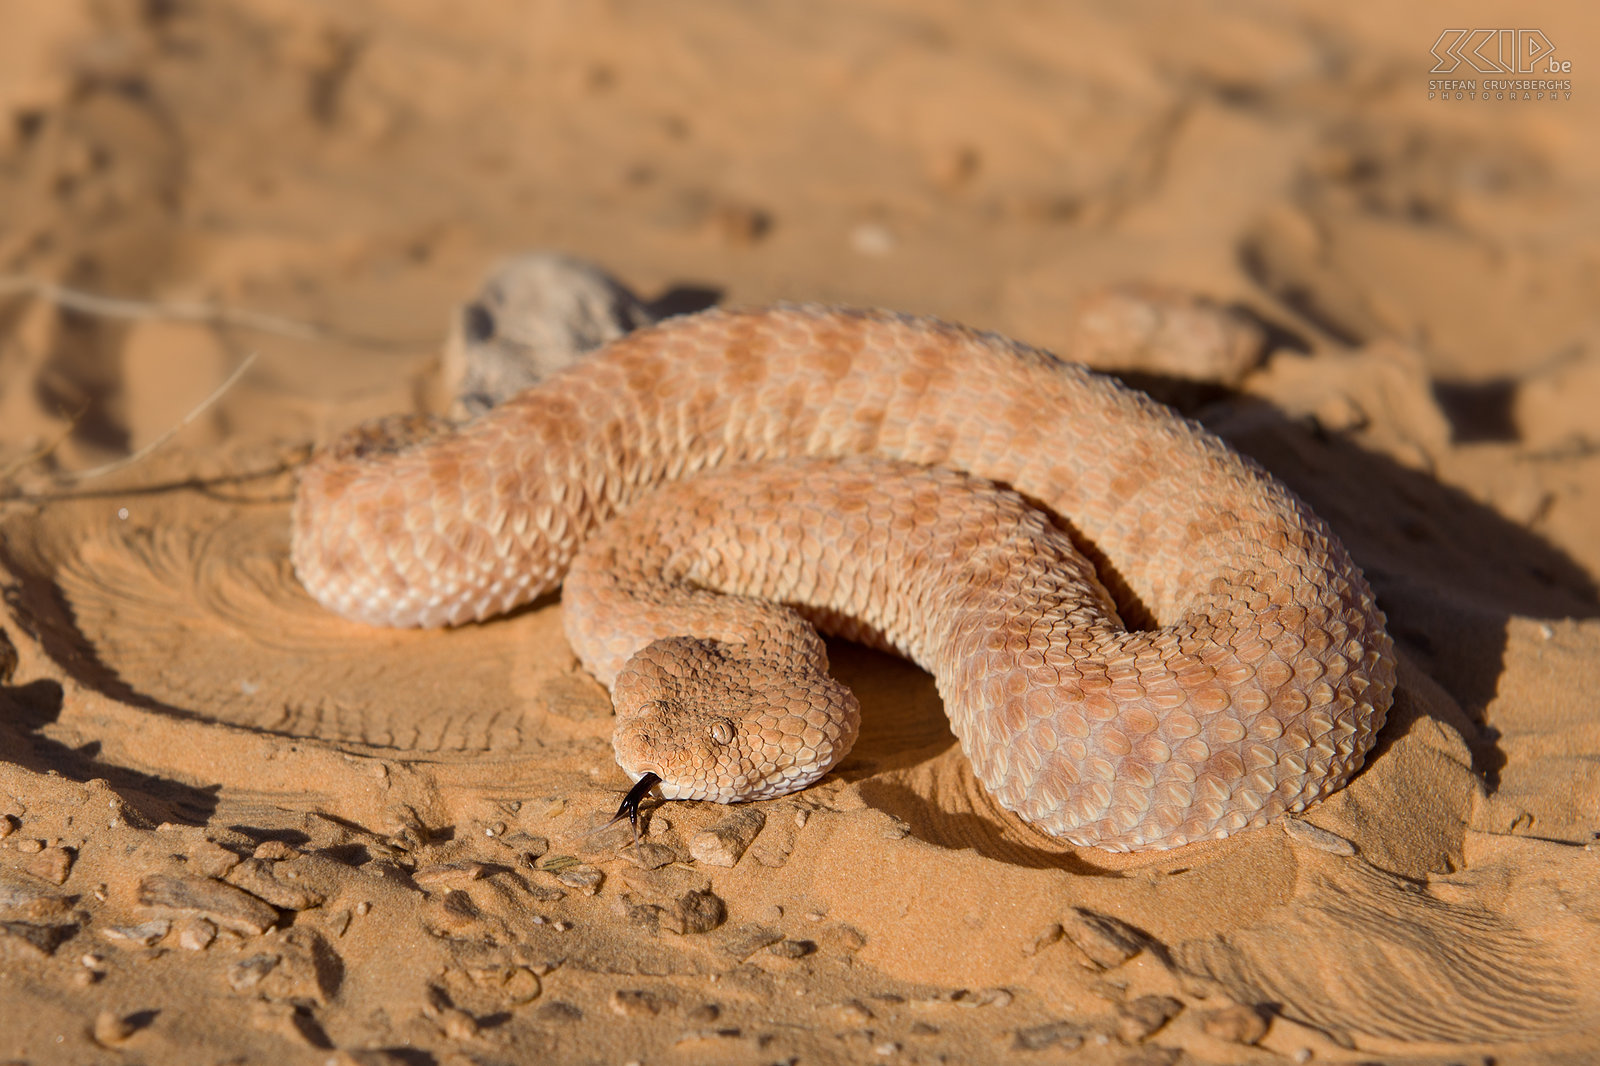 Zand adder Deze zeer giftige zand adder (Cerastes vipera) is een van de typische woestijn slangen in Noord Afrika. Stefan Cruysberghs